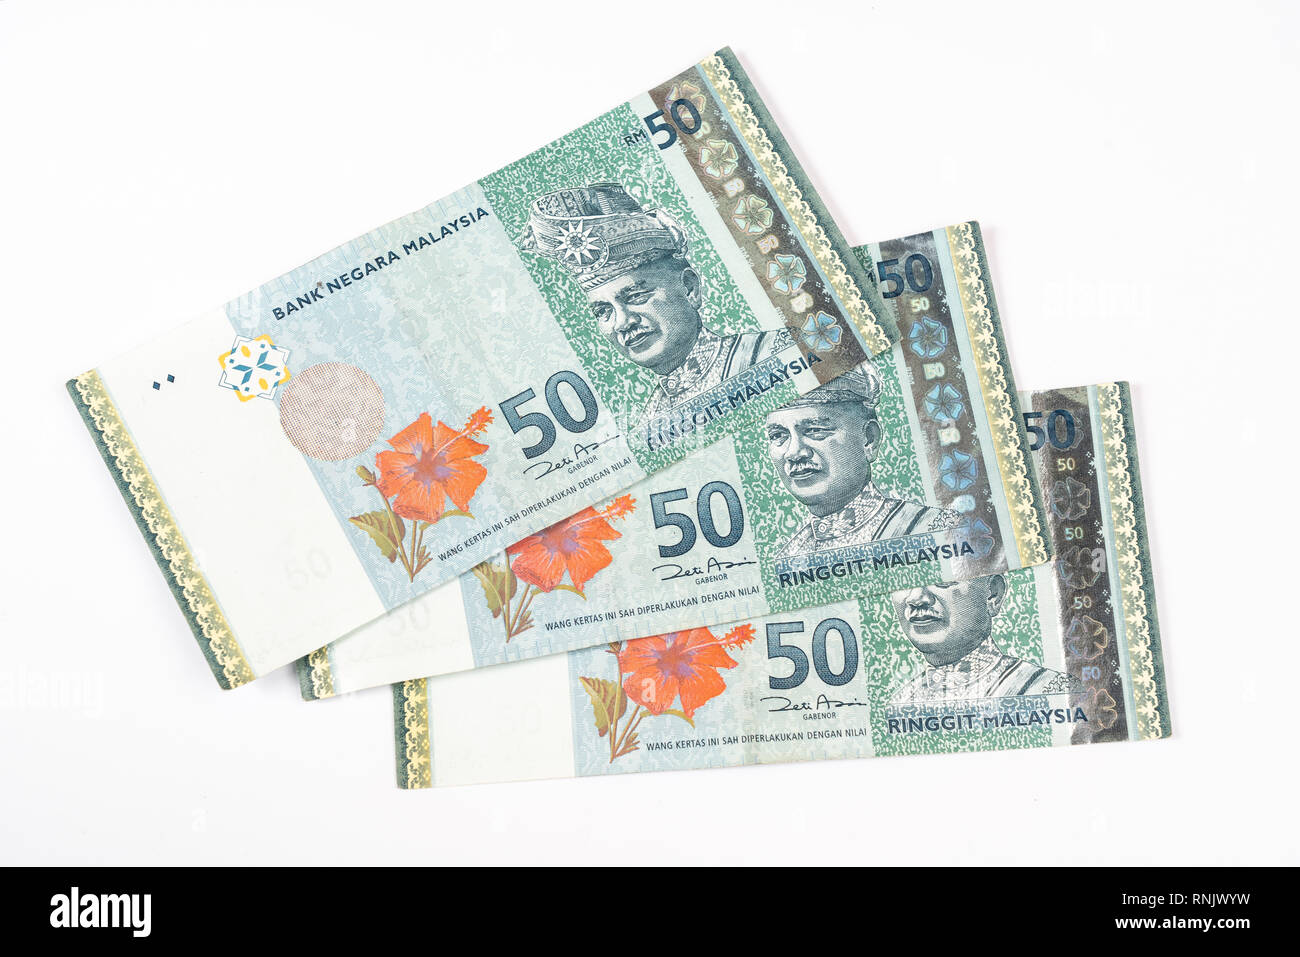 Trois billets de 50 Ringgit malaisien sur une surface blanche Banque D'Images